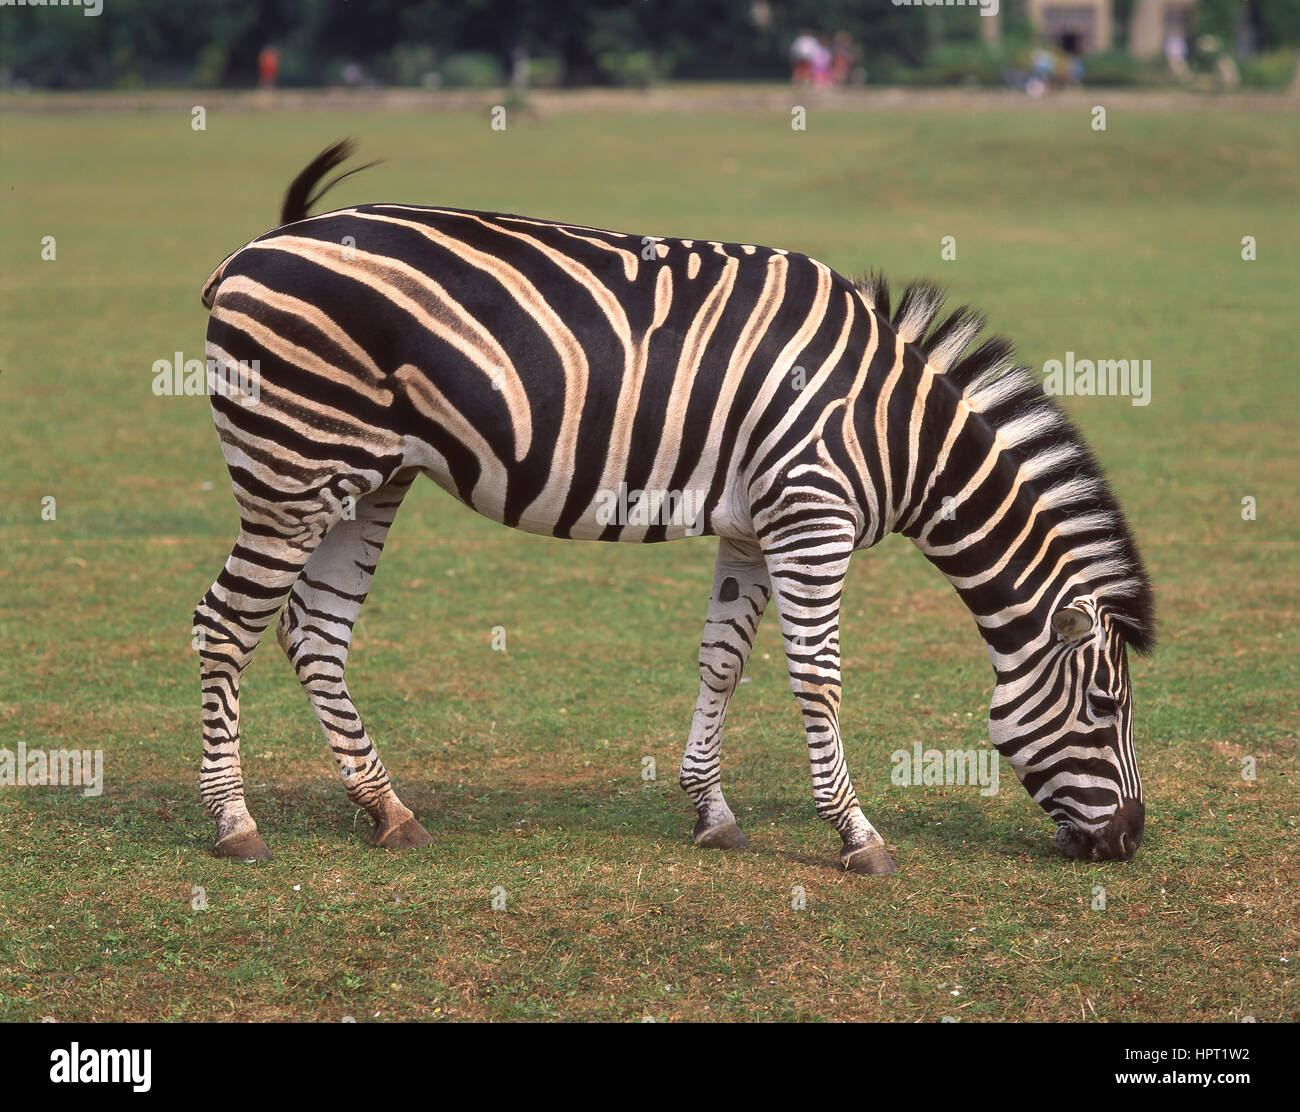 Zebra at Longleat Safari and Adventure Park, Longleat House, Horningsham, Wiltshire, England, United Kingdom Stock Photo